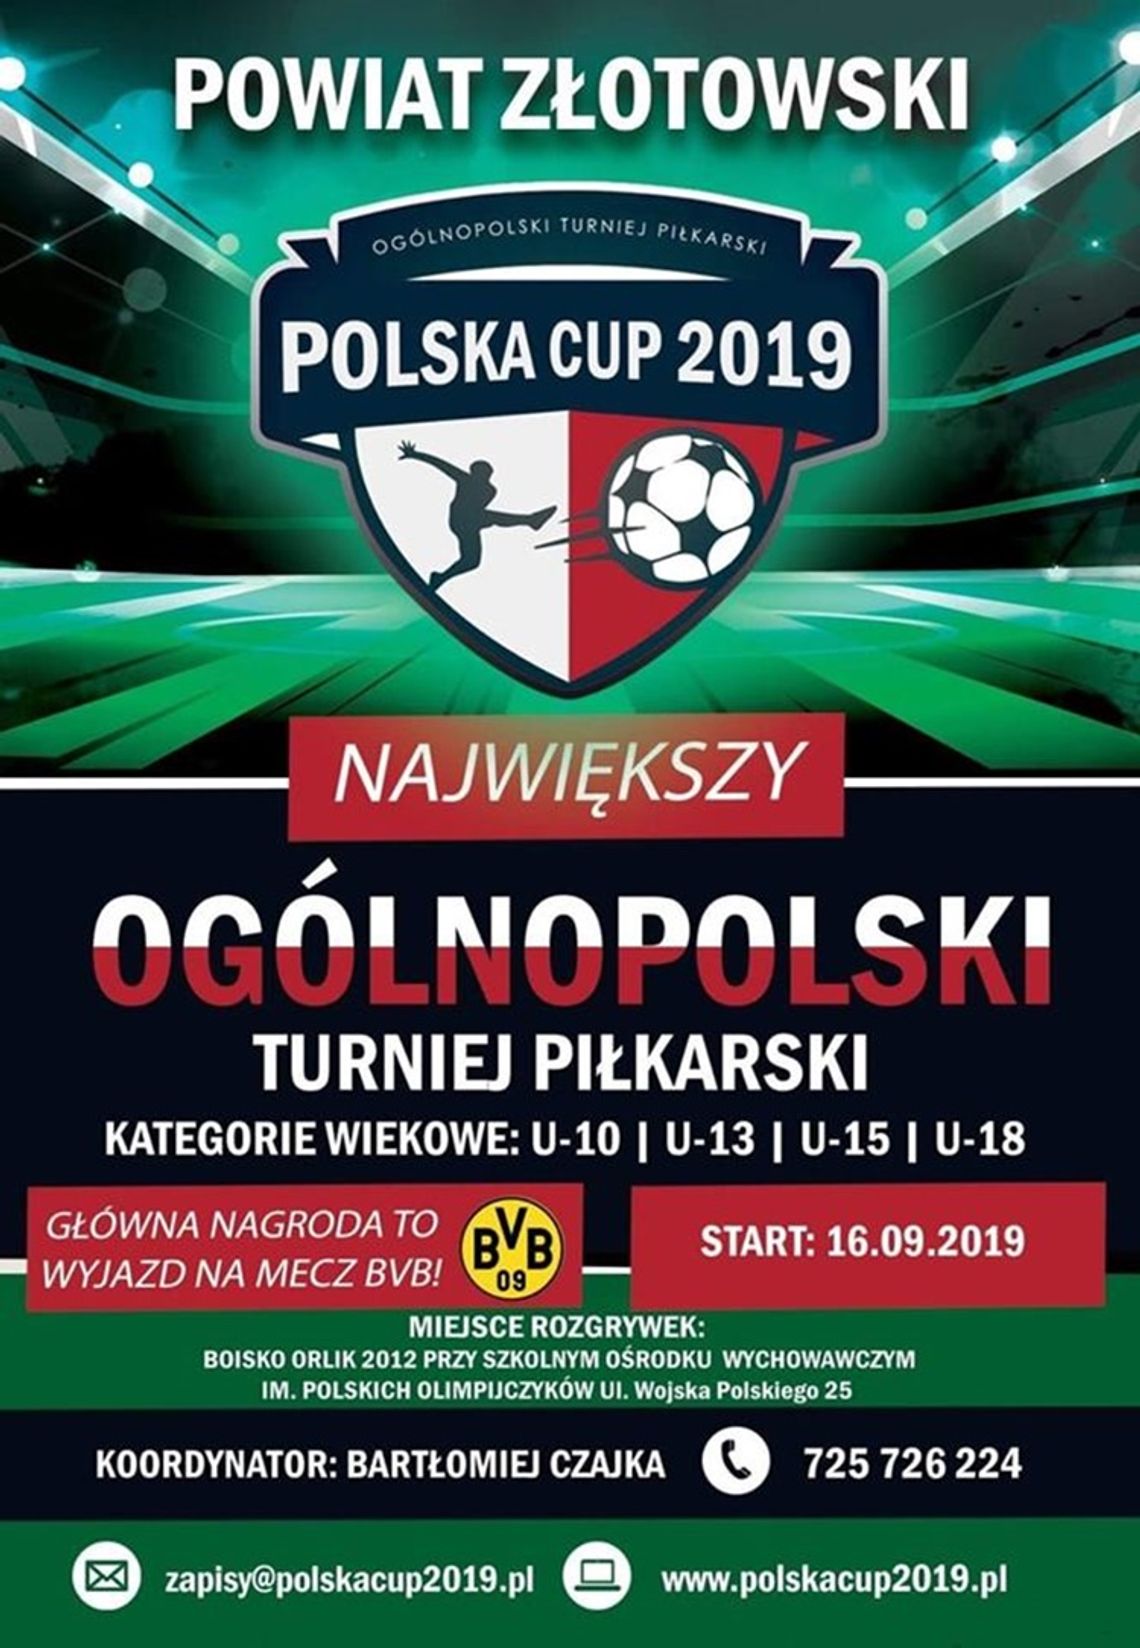 Polska Cup 2019 - powiat złotowski!